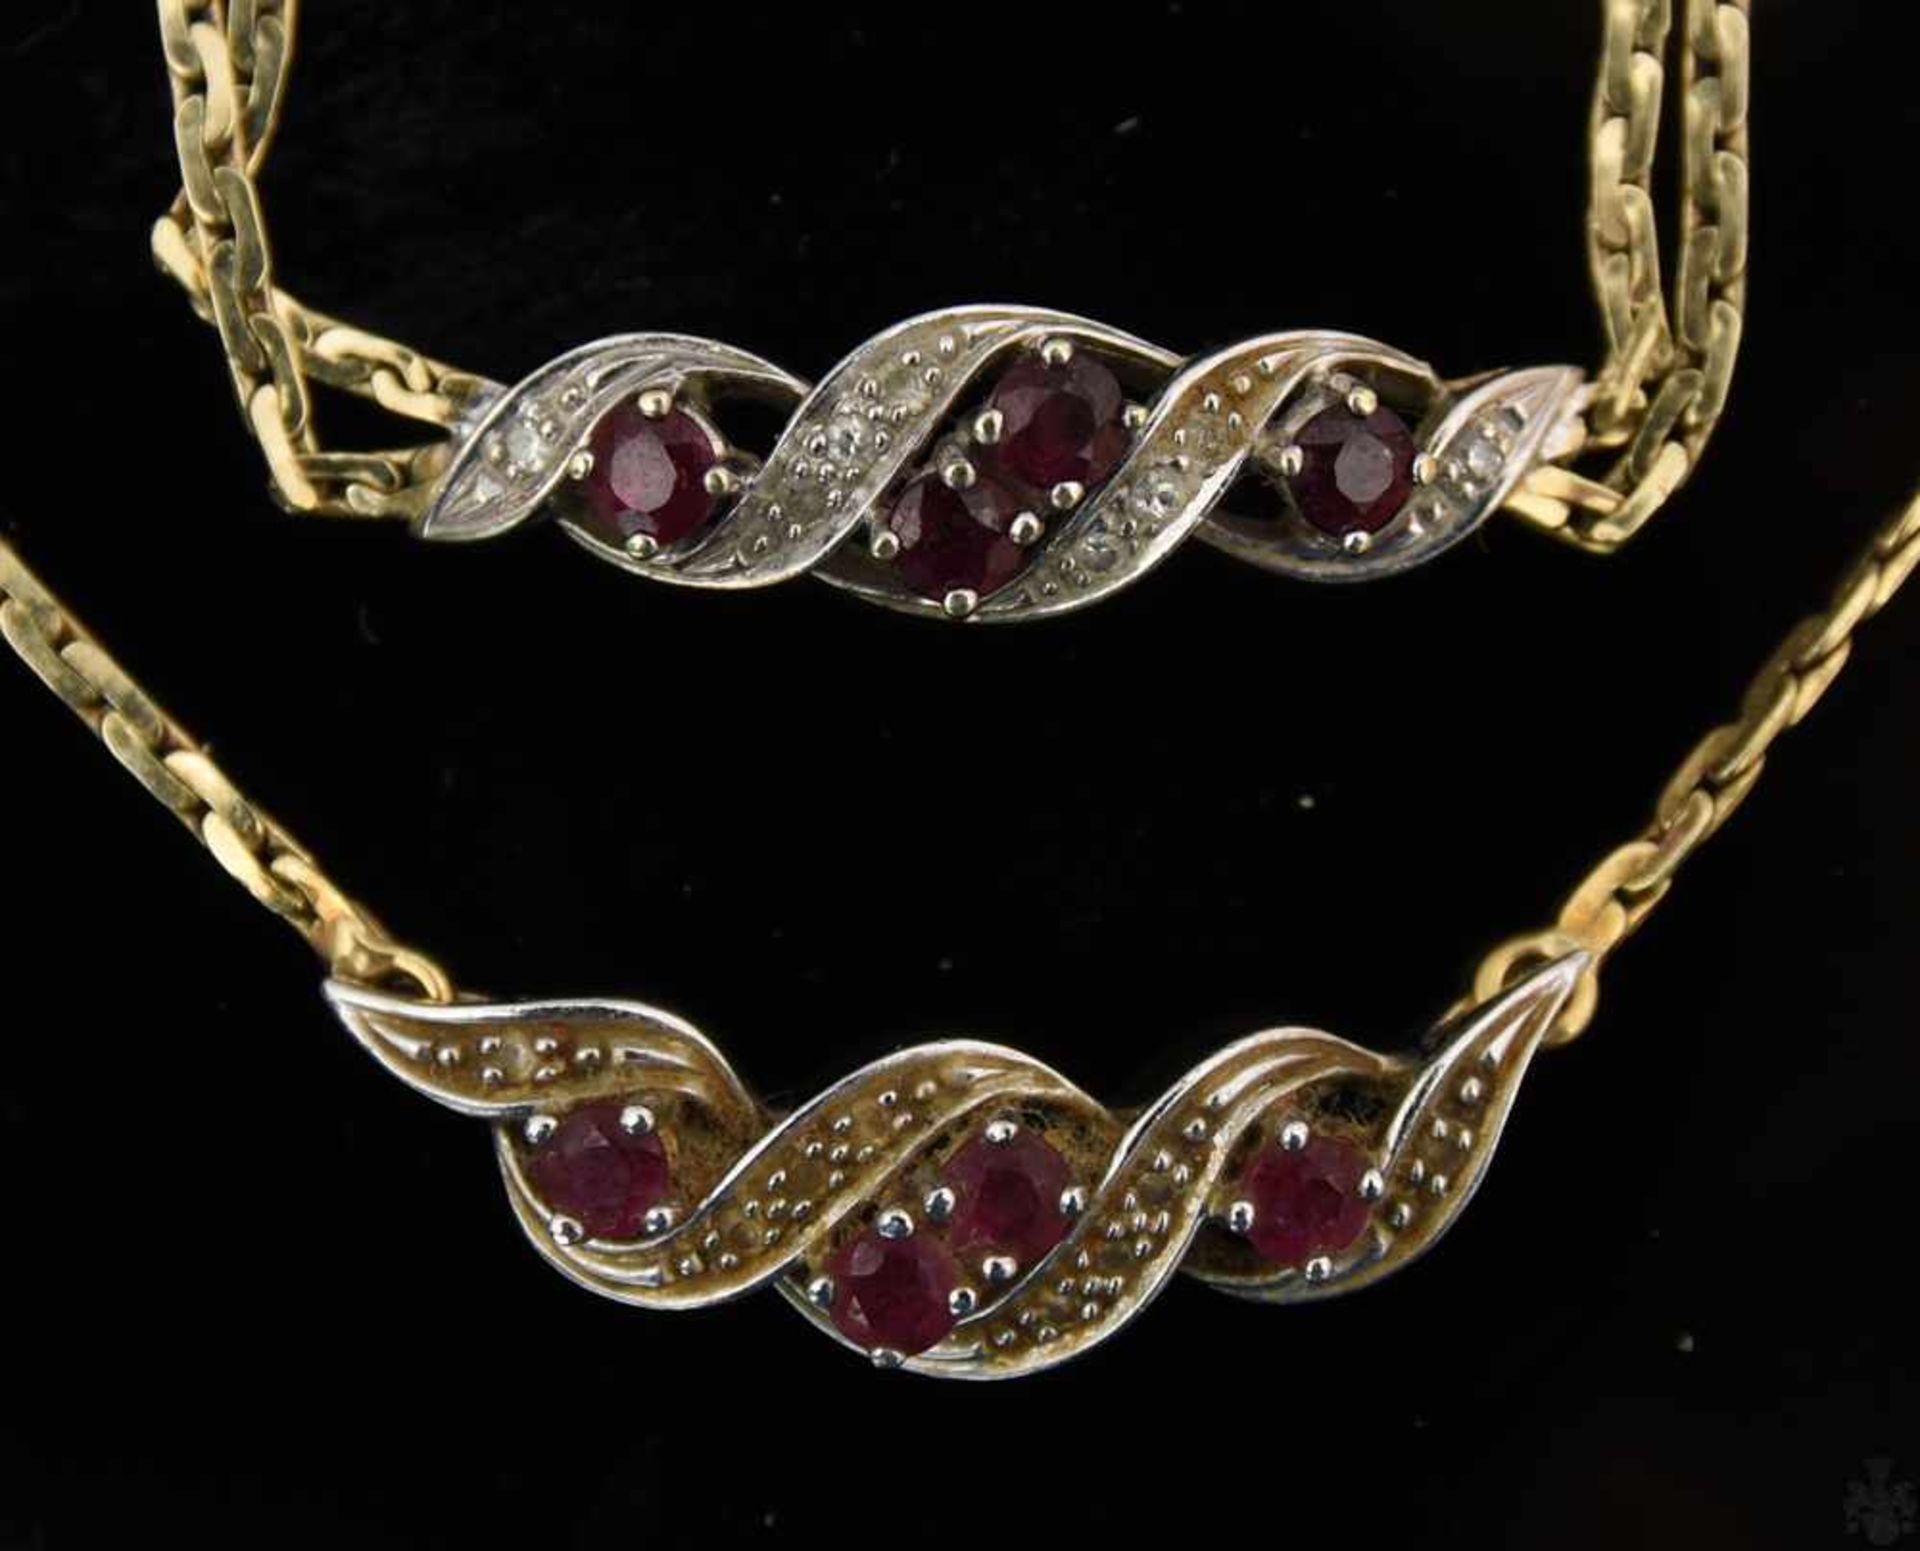 HALSKETTE UND ARMBAND, Rubine/Diamanten, 585er GelbgoldZueinander passendes Set aus Halskette und - Bild 2 aus 3